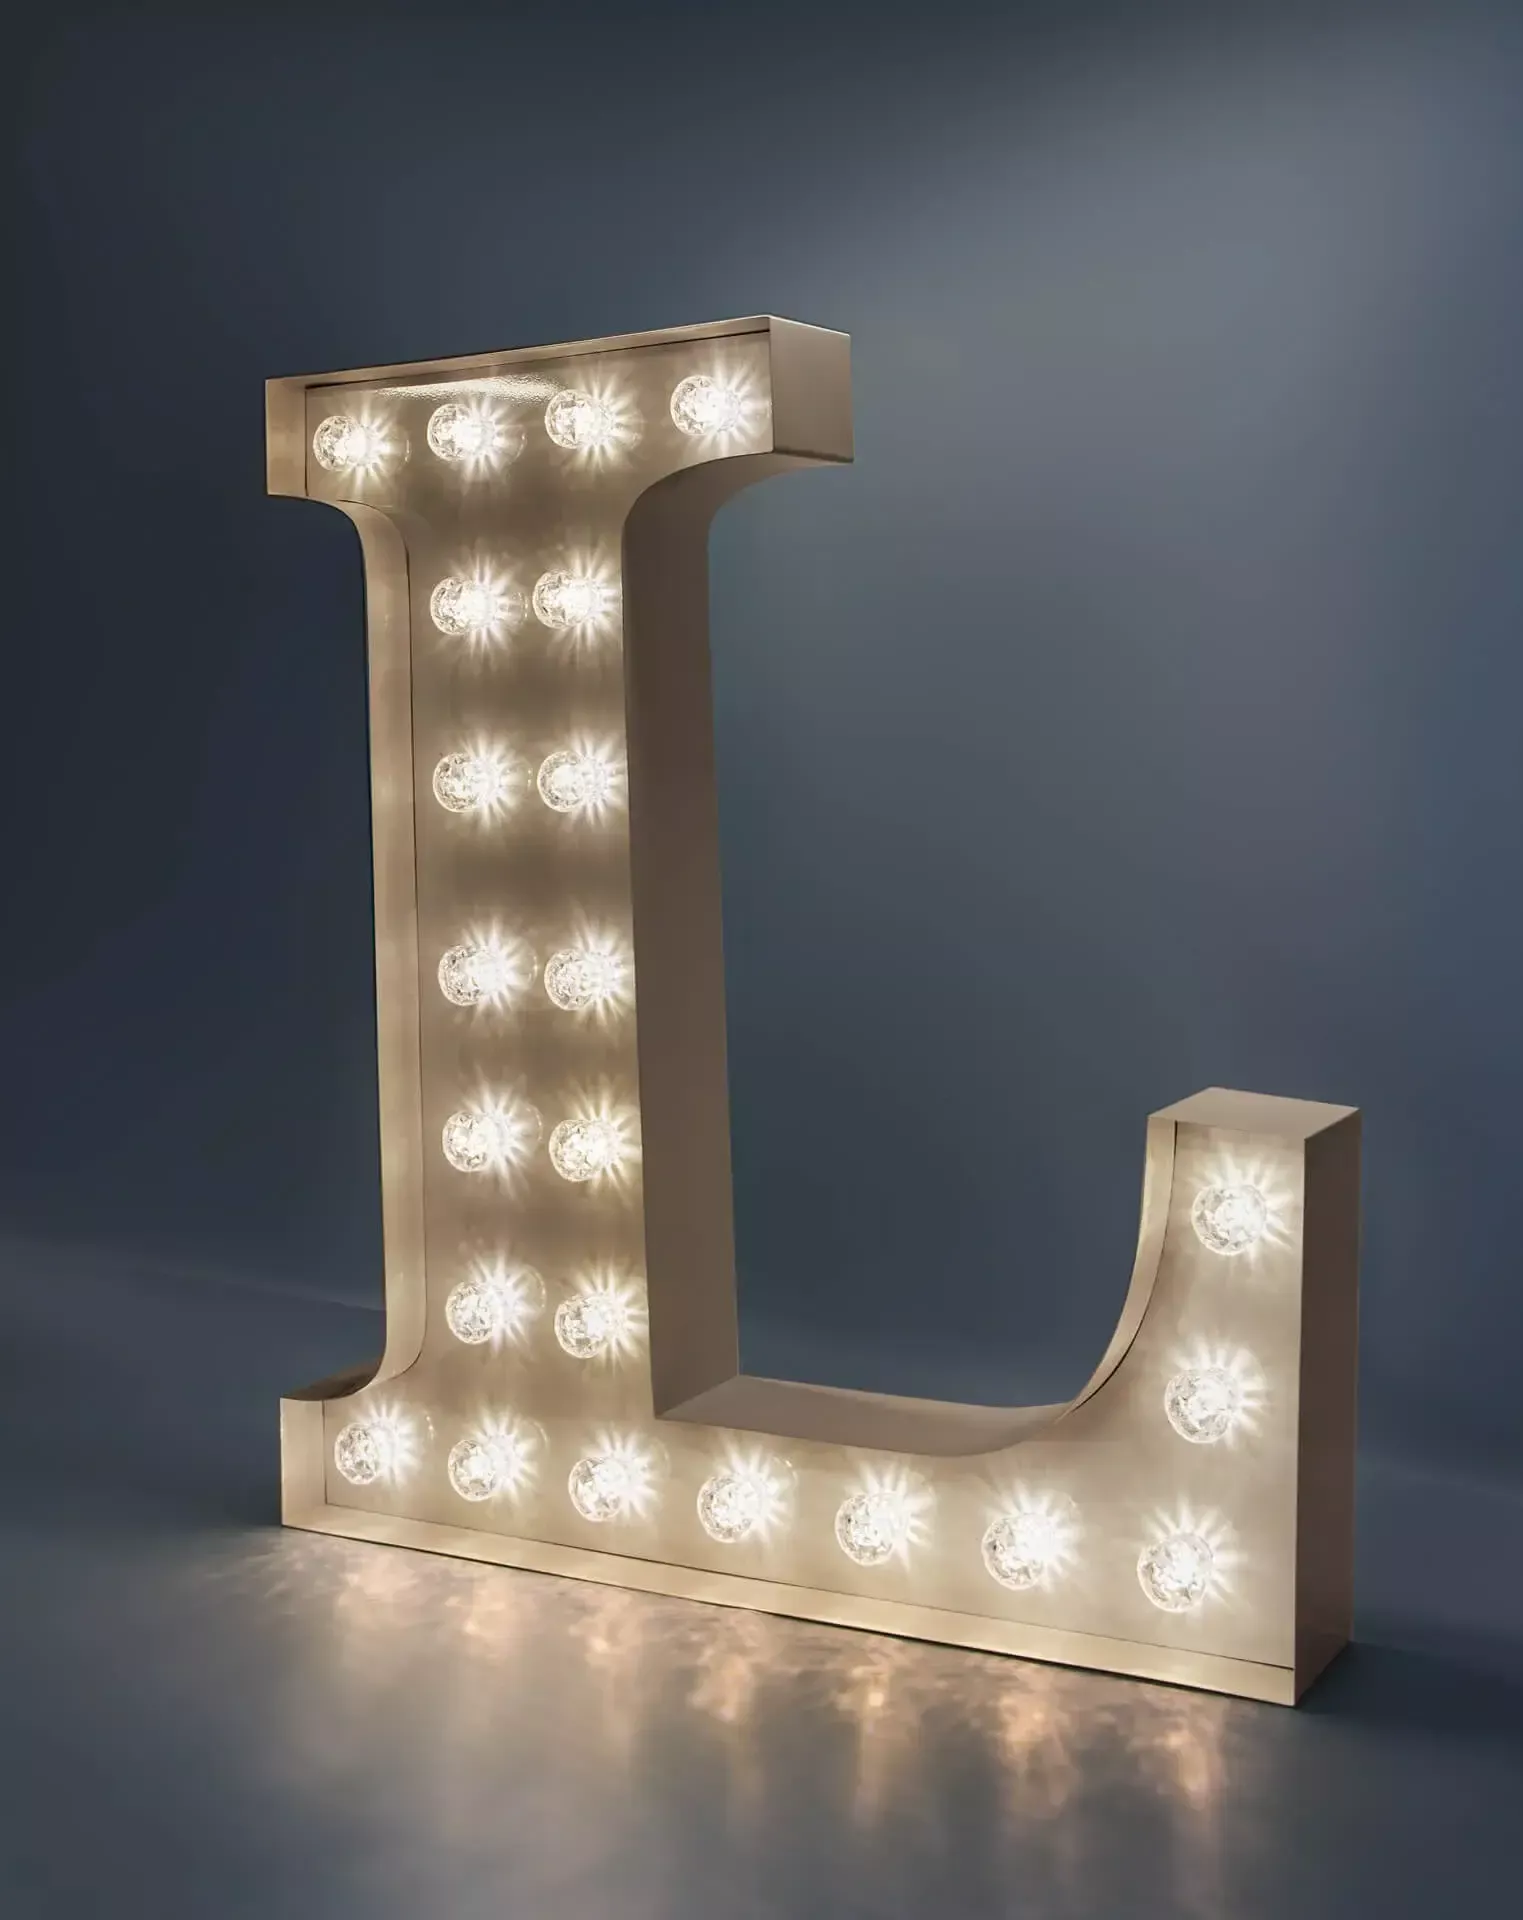 Letter L - luminous letter with white light bulbs